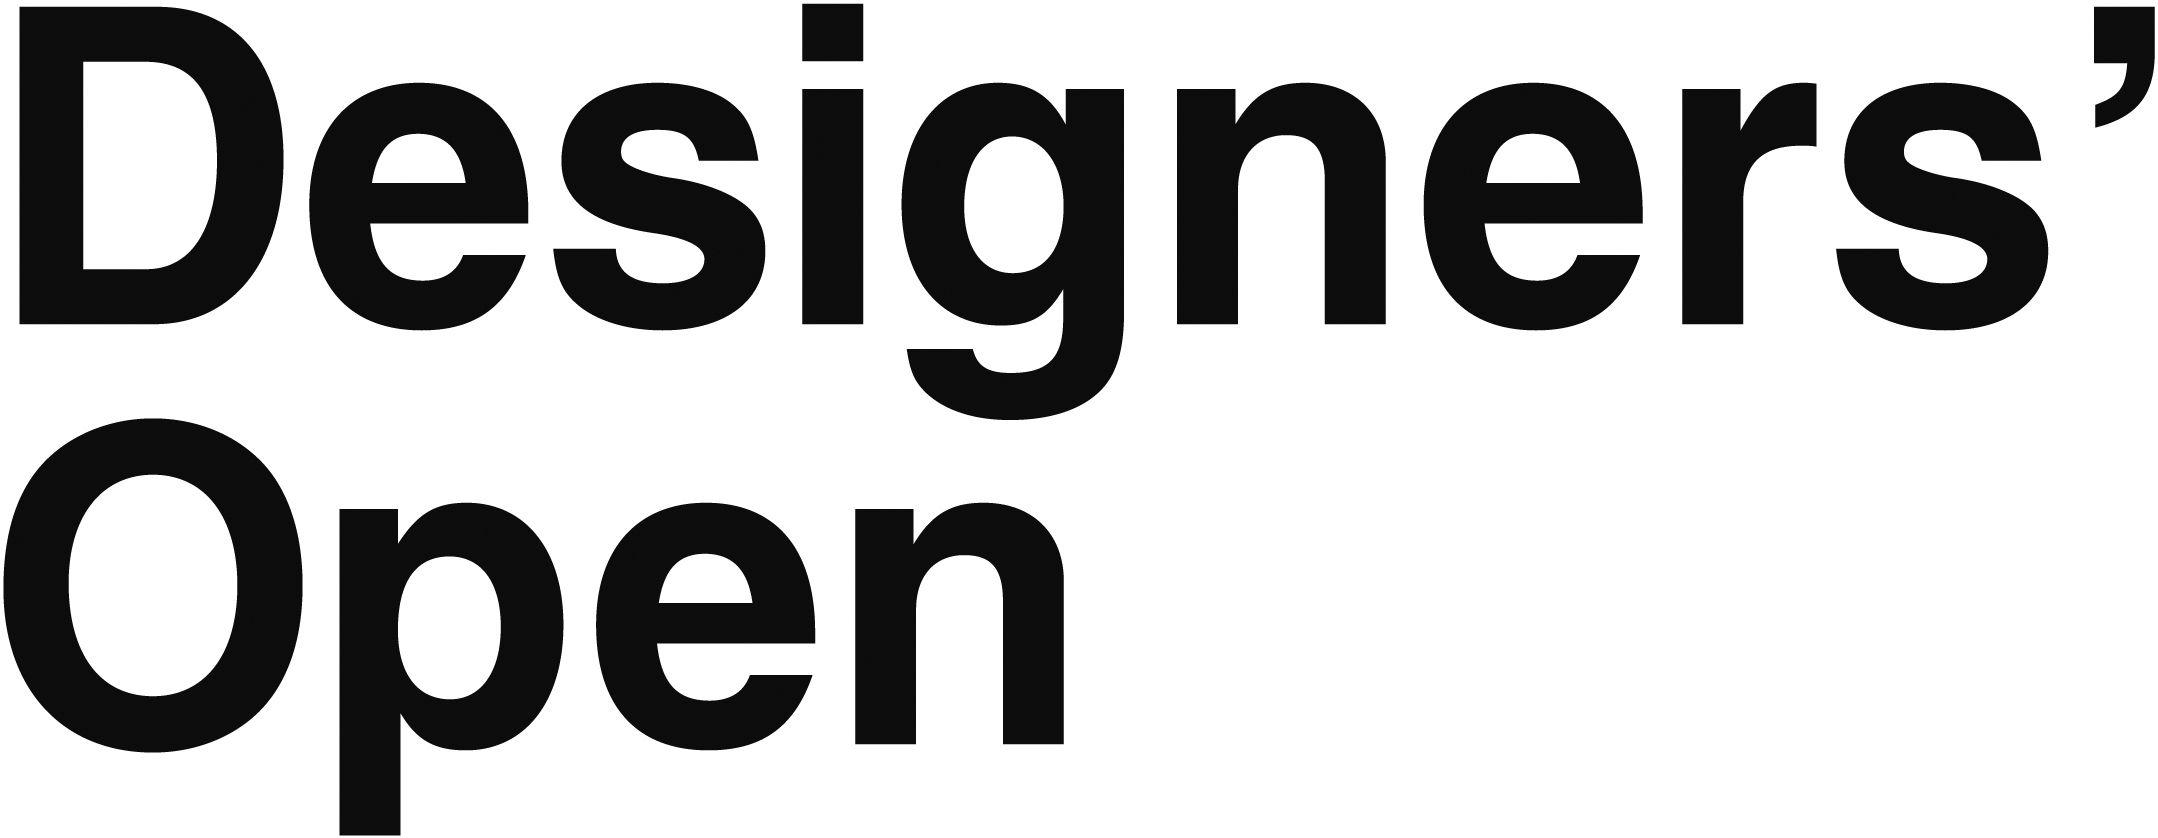 Designers Logo - Werbemittel